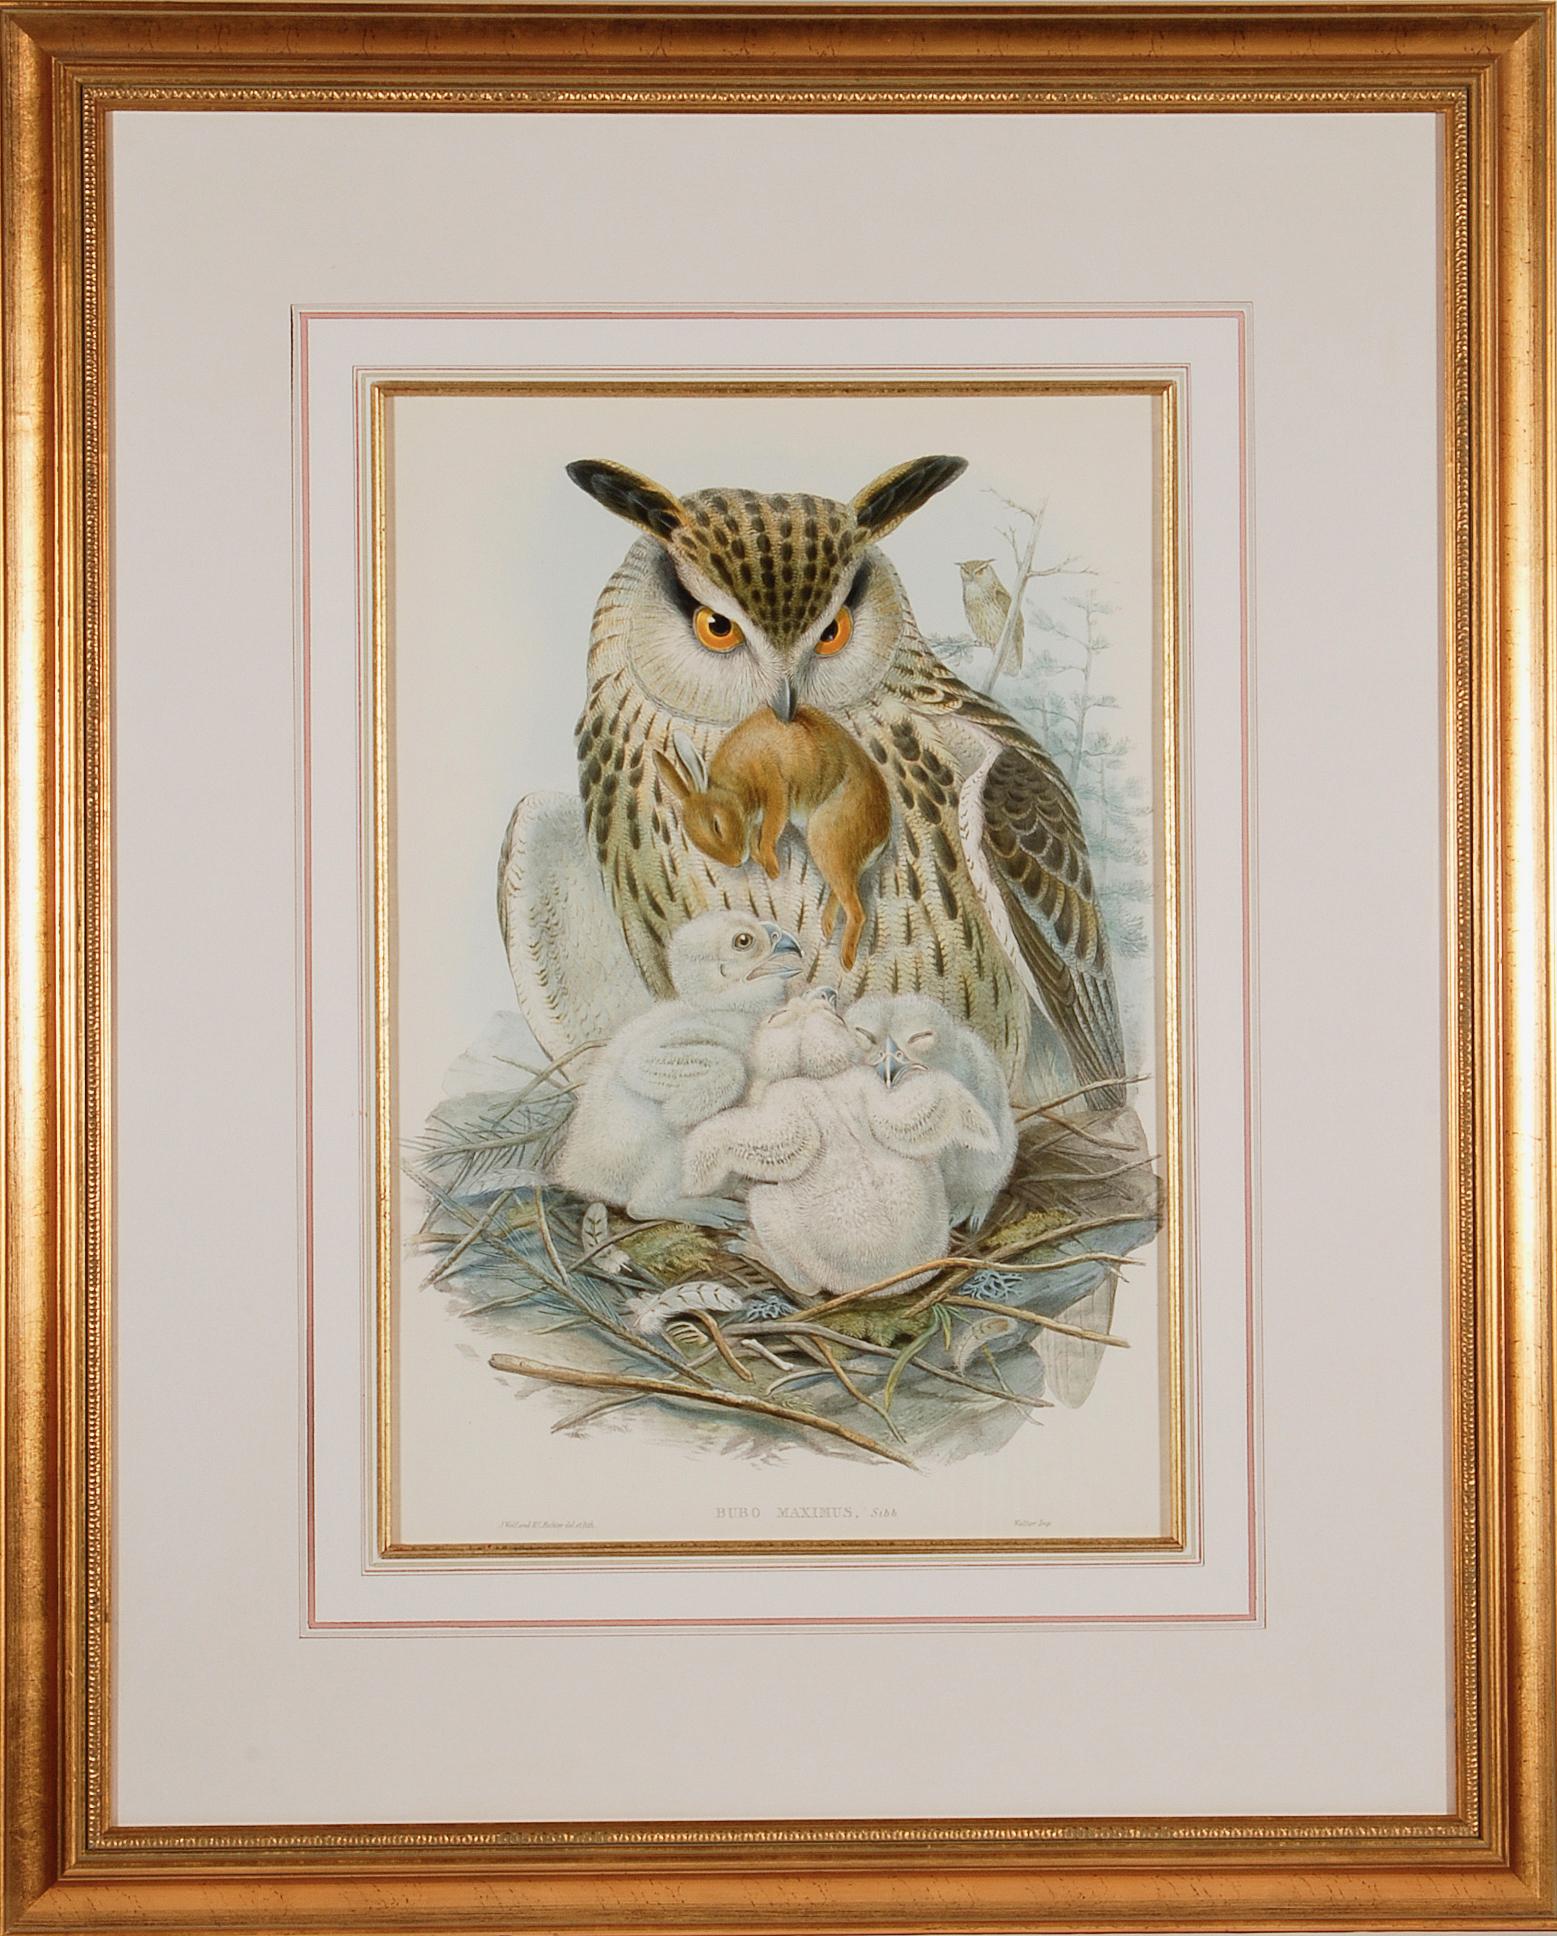 L'aigle ou le hibou en corne : Lithographie originale encadrée du 19e siècle, colorée à la main par Gould